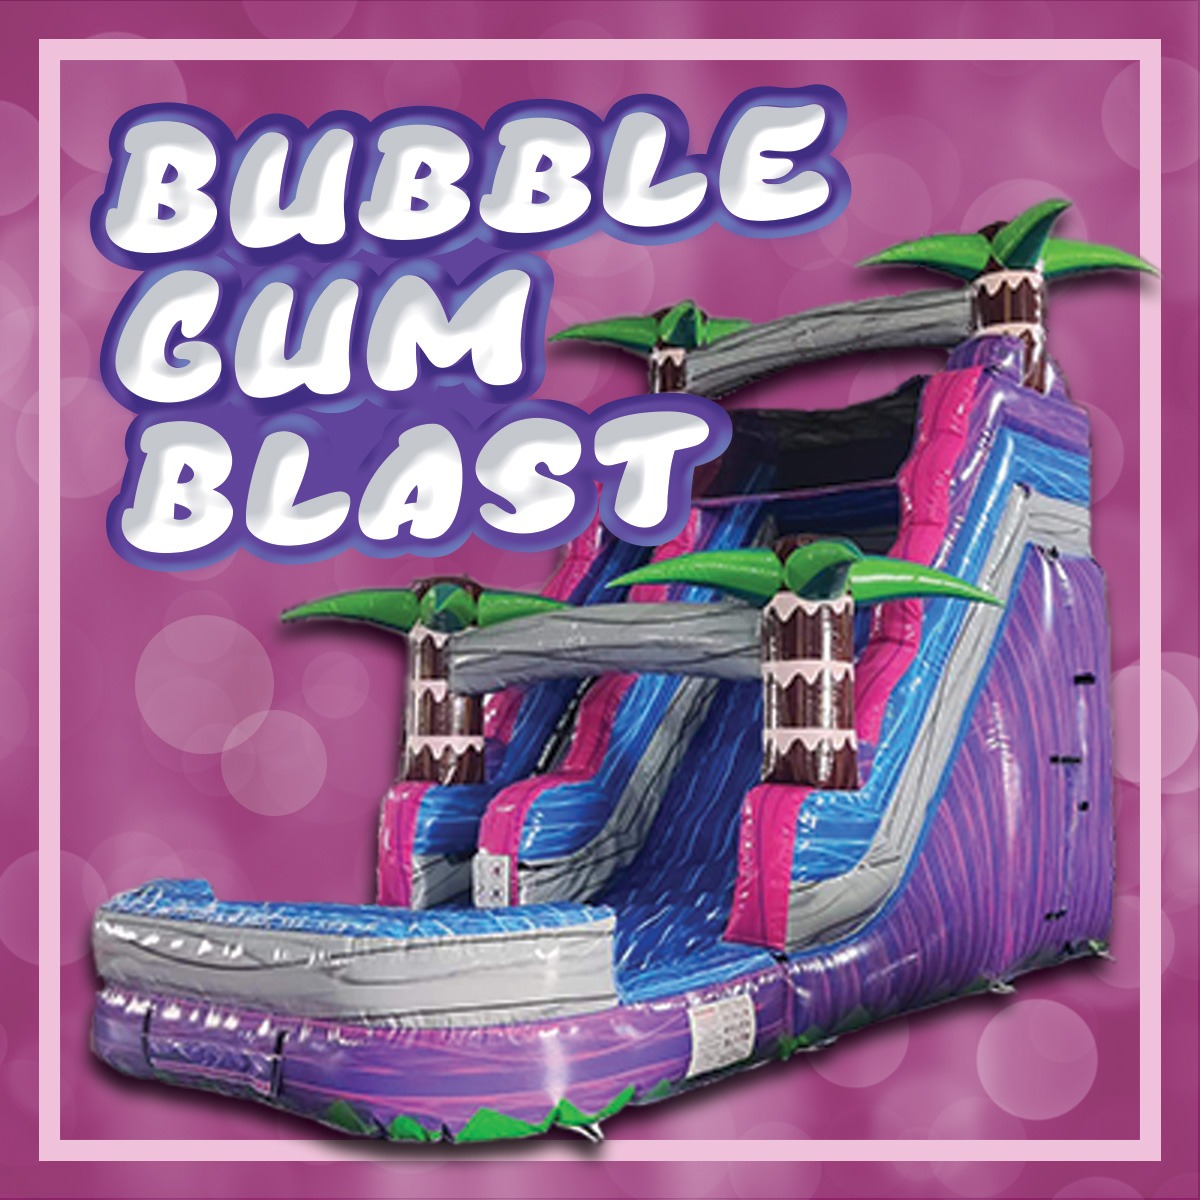 Dazzling Pink Castle Bounce House Rental - Birmingham AL - ABC123 Inflatables